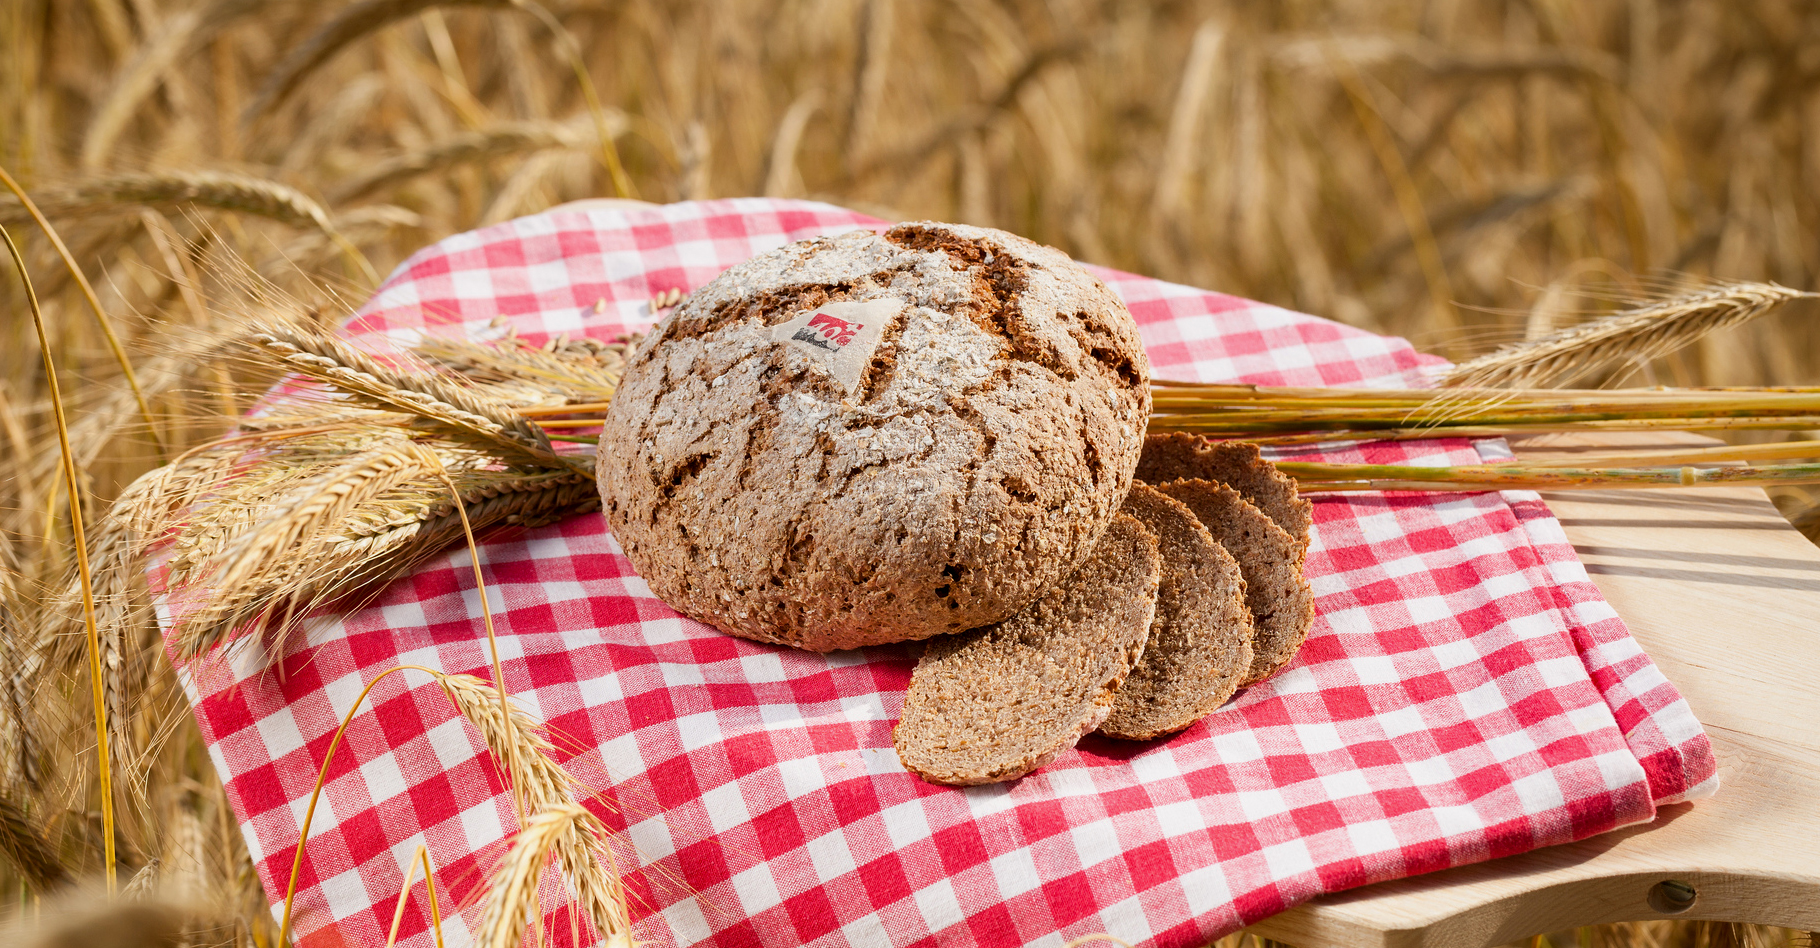 Le pain de seigle valaisan AOC préparé par des artisans boulangers. © Valais Wallis, Flickr, CC by-nc 2.0